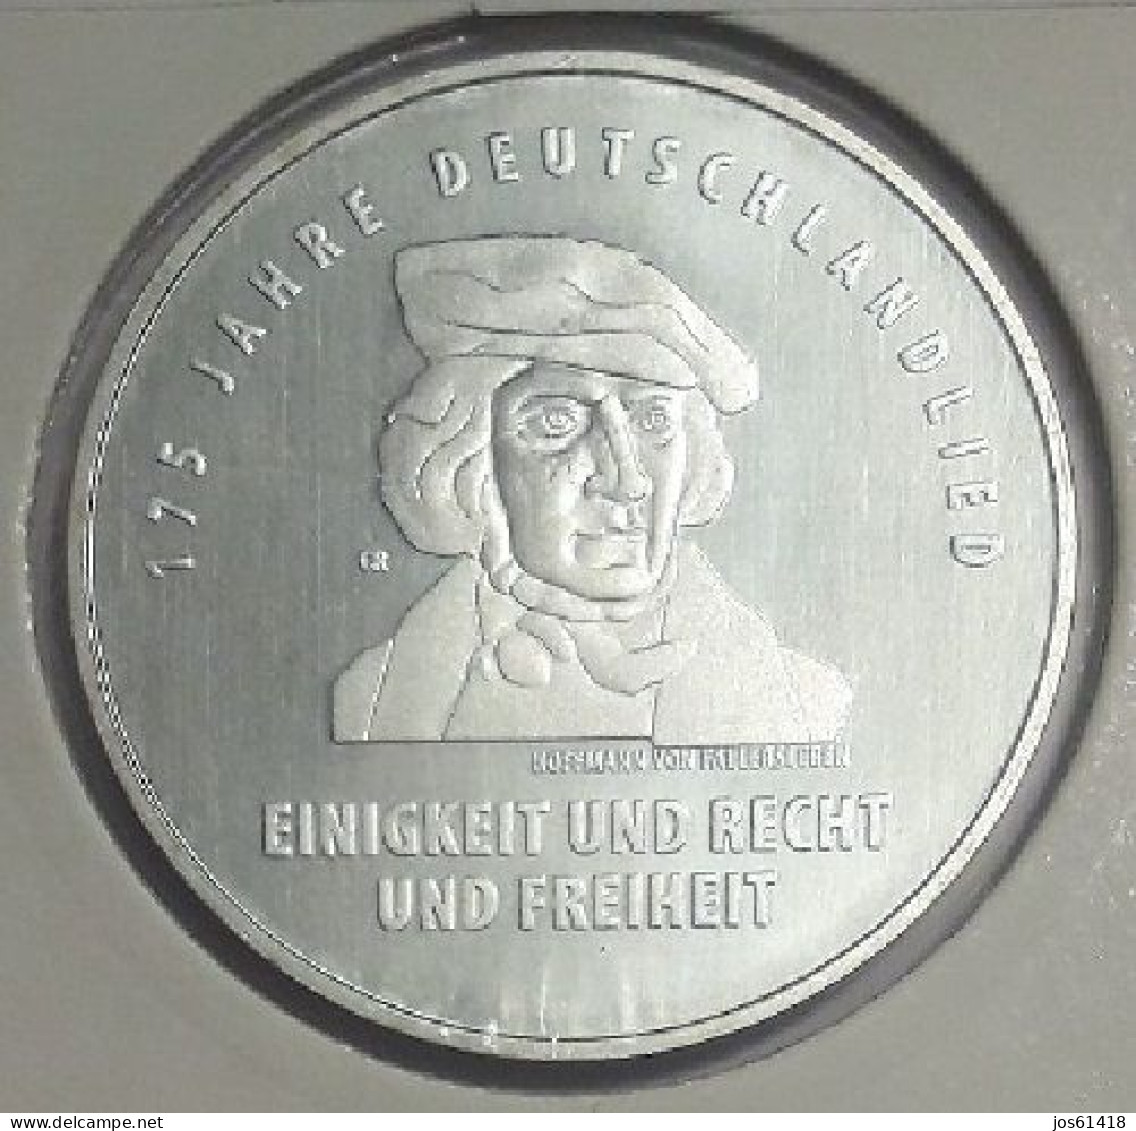 20 Euros Alemania / Germany   2016 175 Aniversario De La Canción Alemana  J Plata - Deutschland